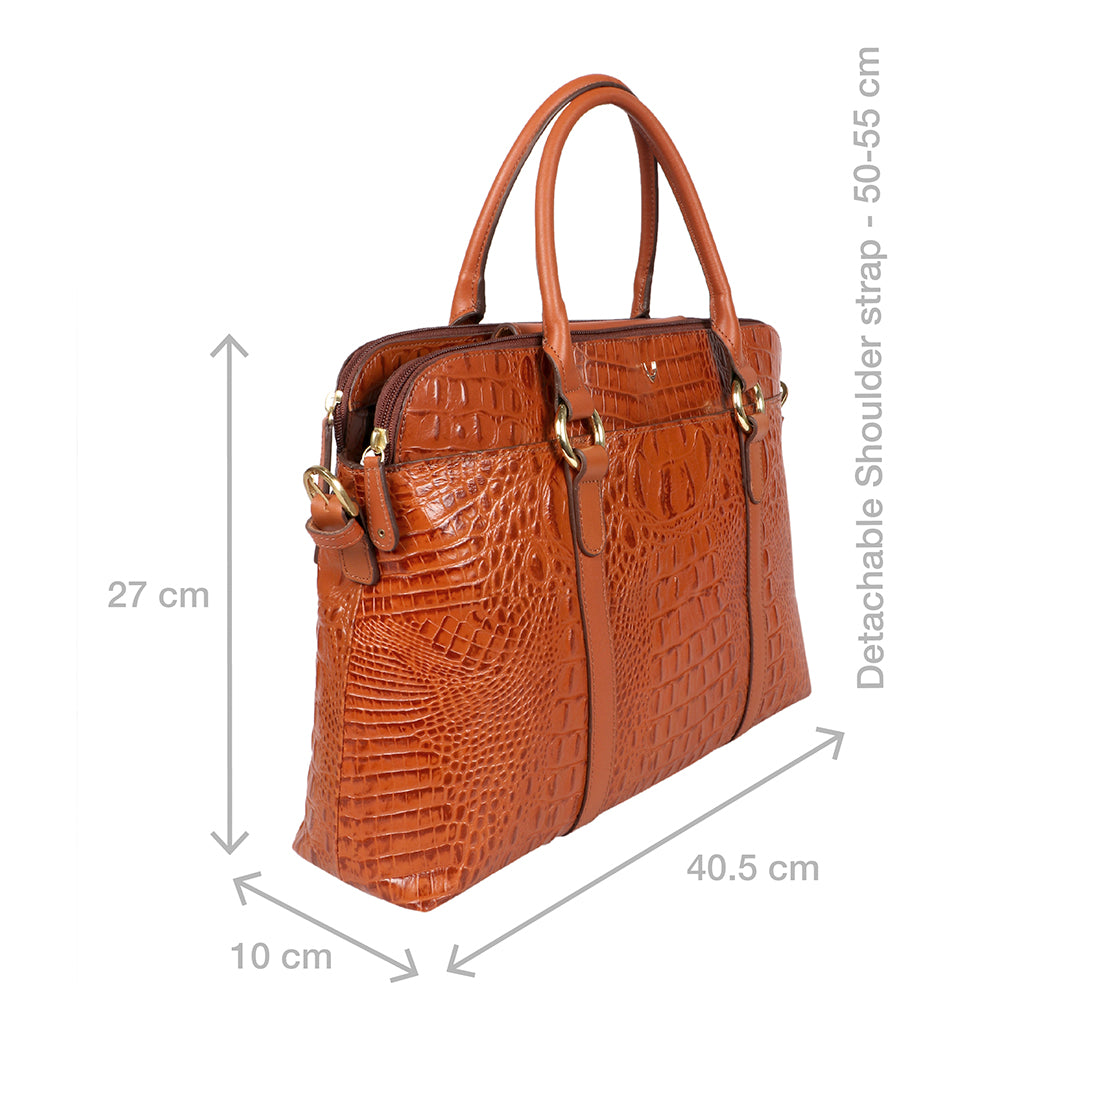 Buy Blue Orsay 03 Tote Bag Online - Hidesign